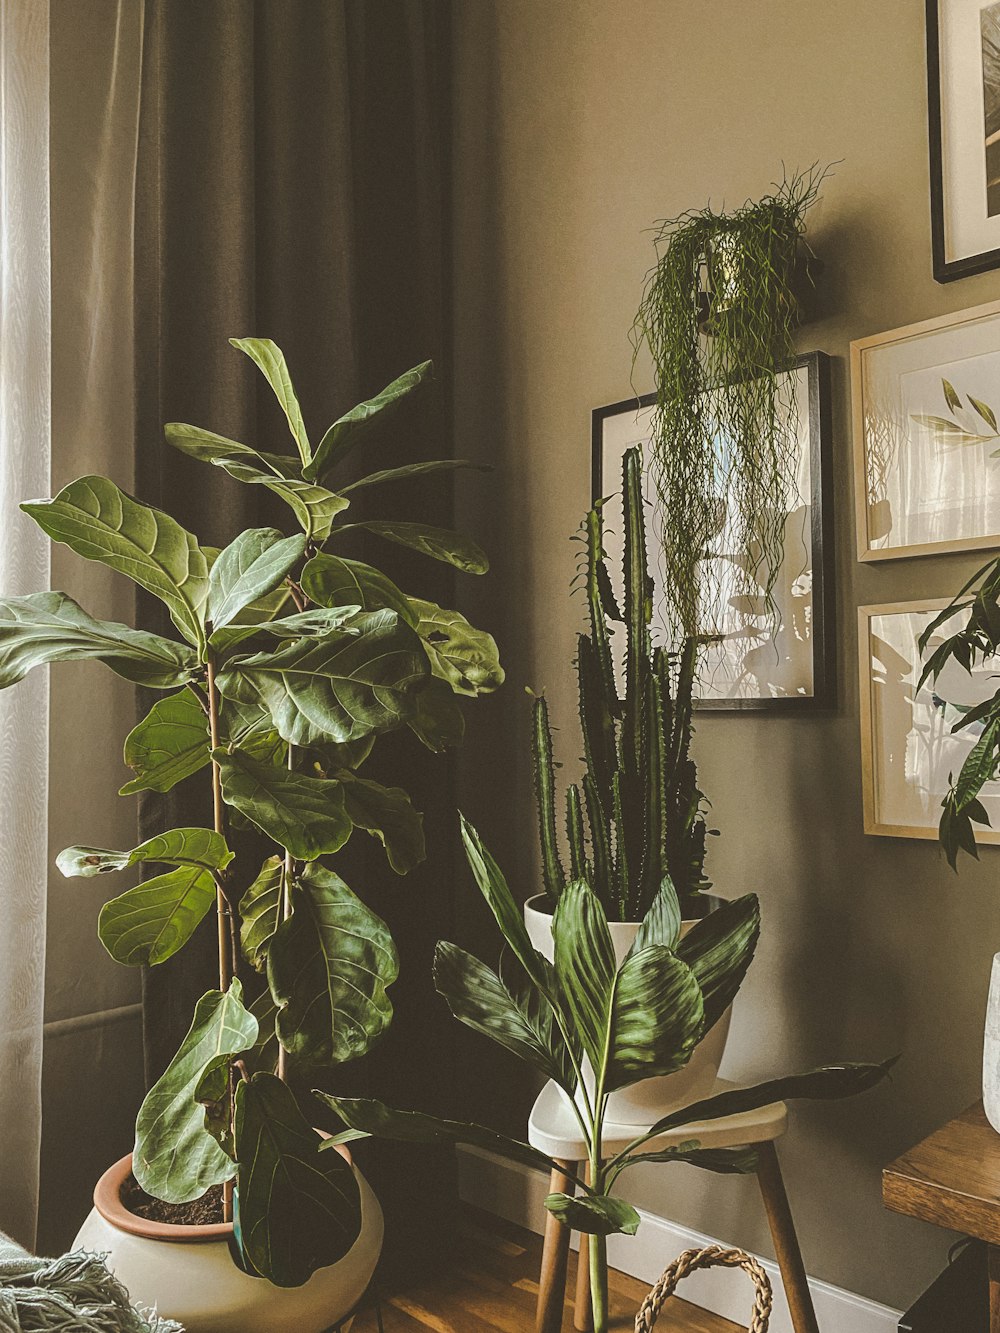 green indoor plant near black framed mirror